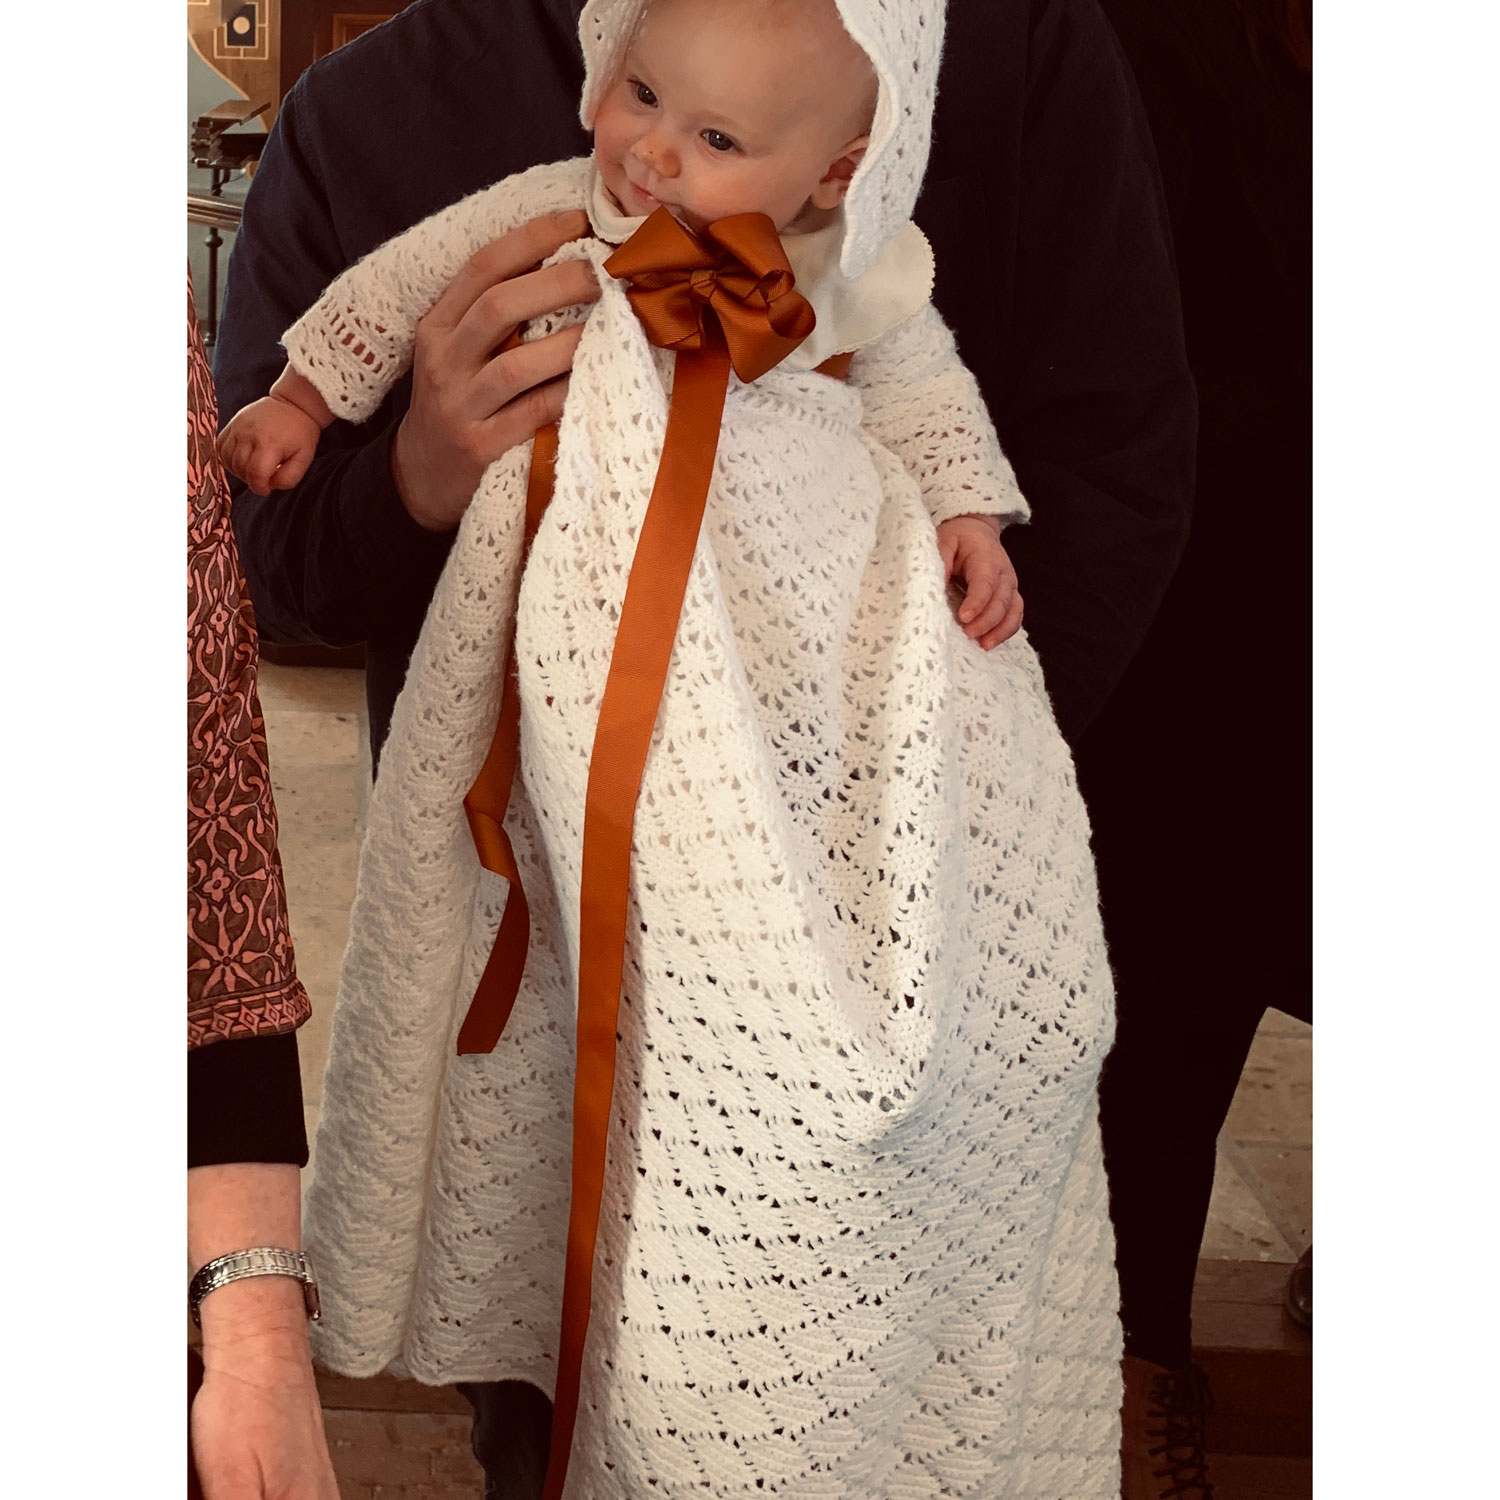 bånd til dåbskjole i KOBBER - dåbsbånd til barnedåb LÉHOF